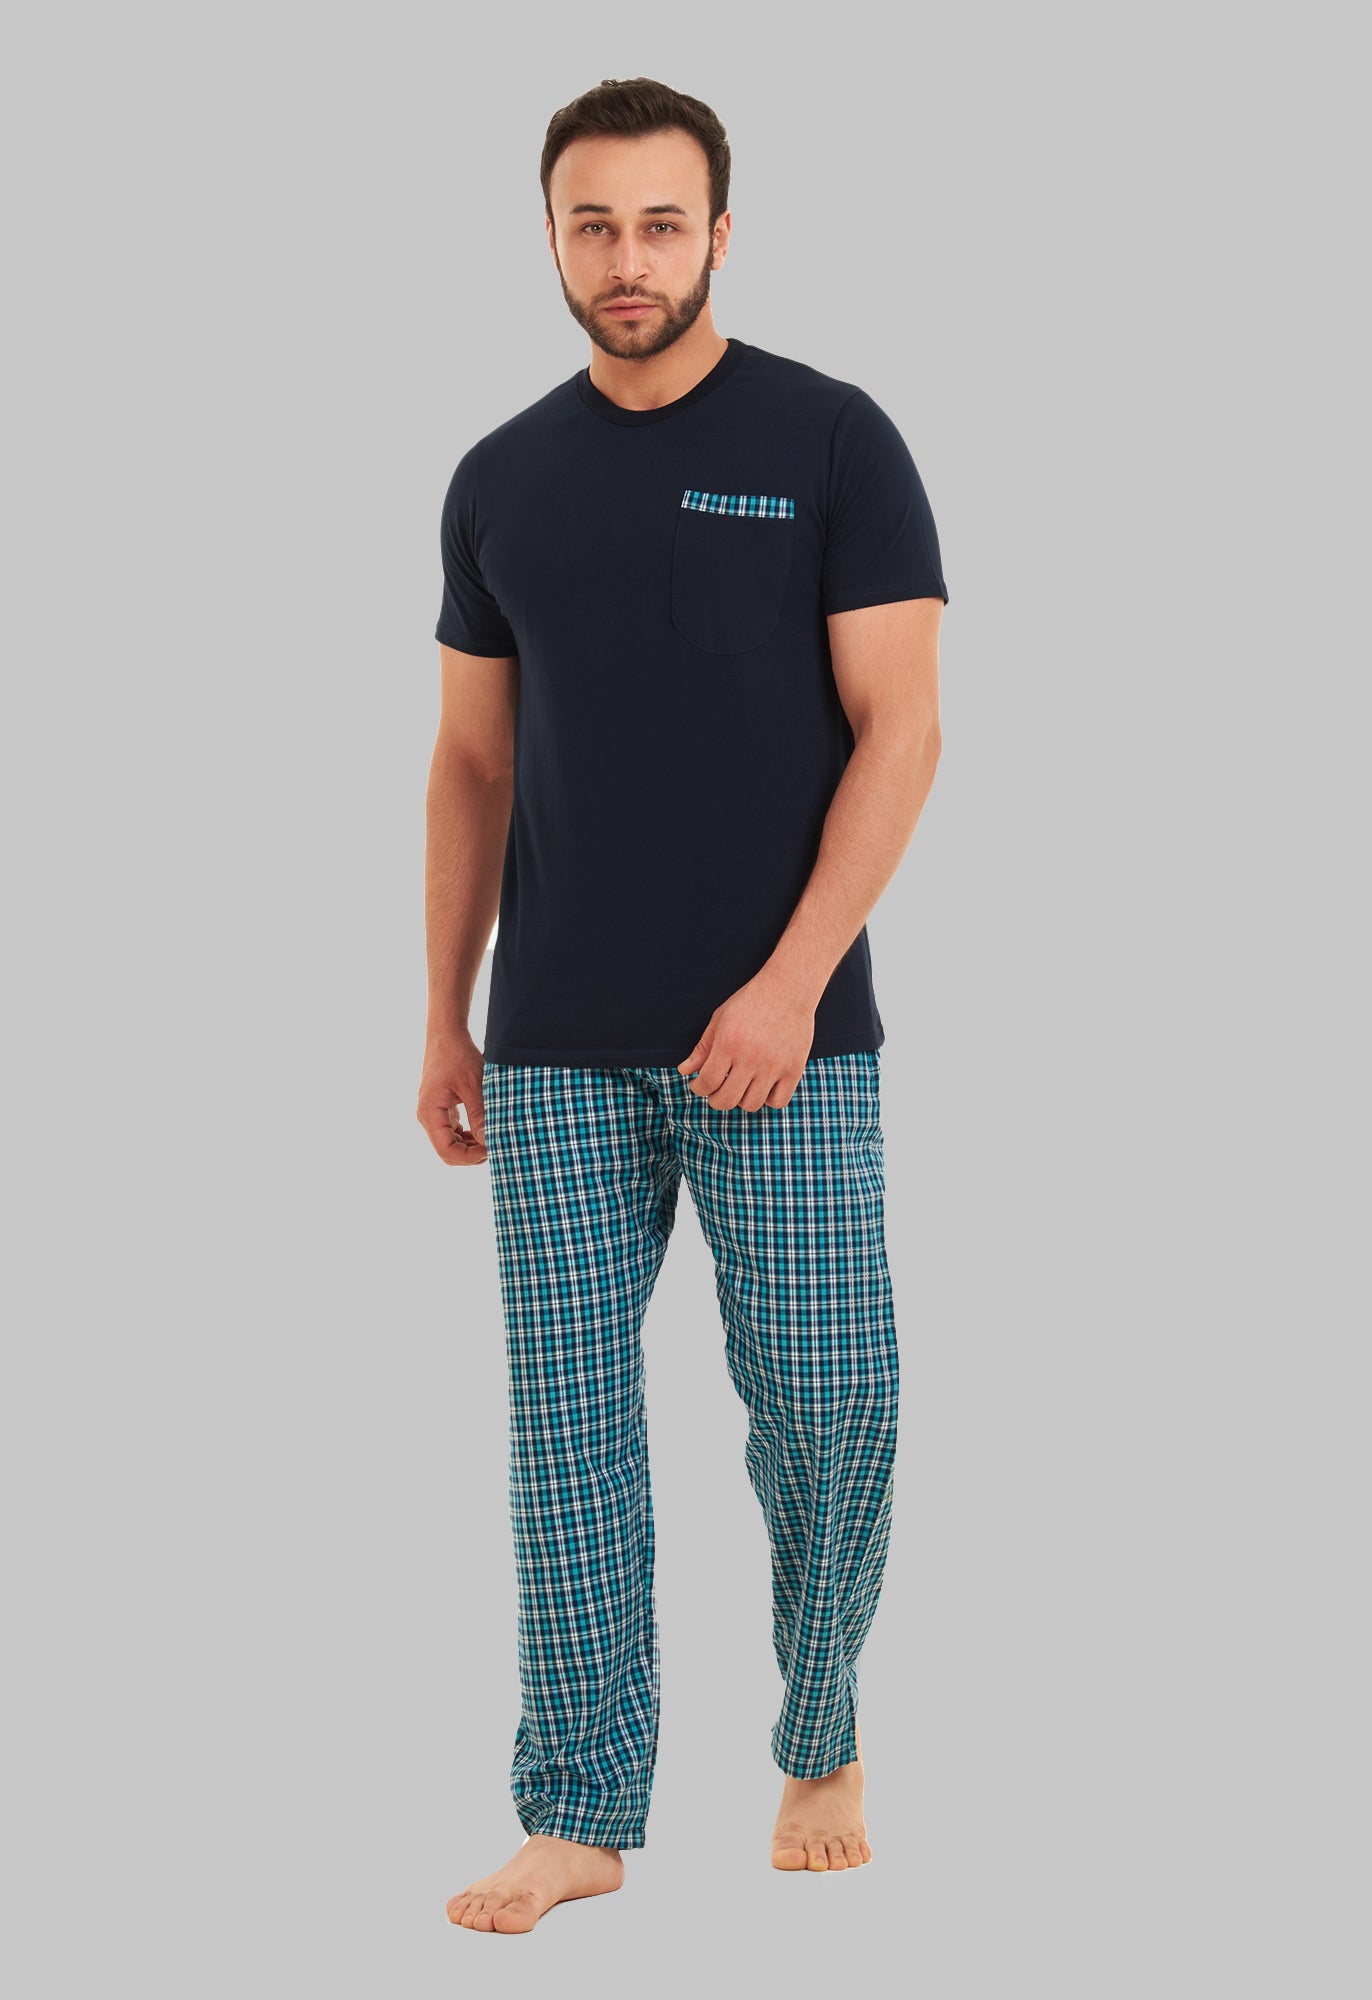 Pajamas